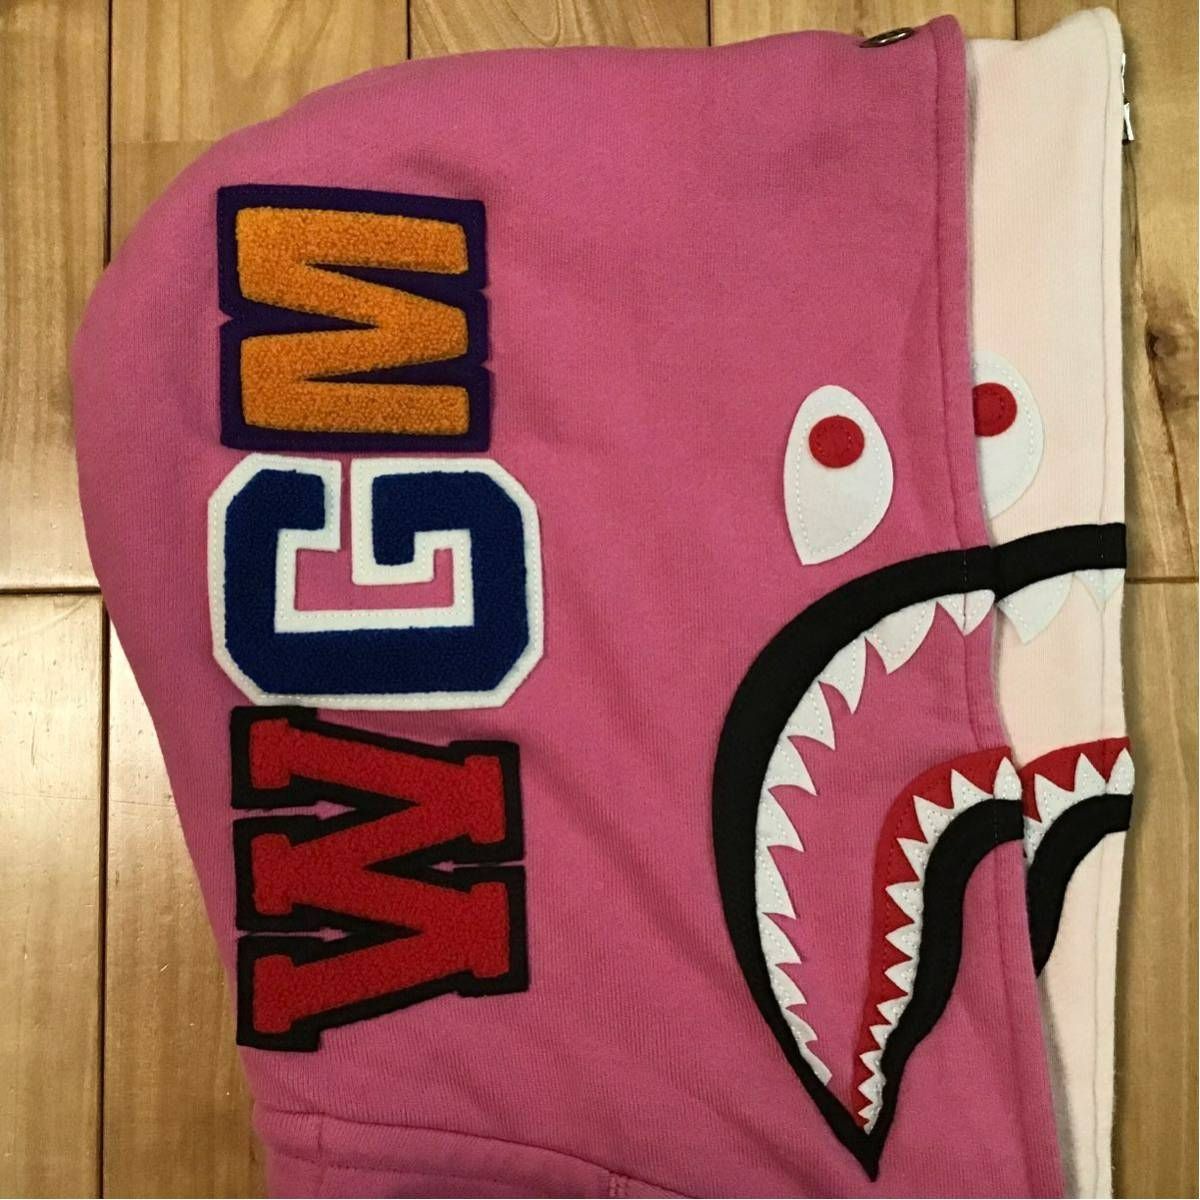 ダブル シャーク パーカー レディース Sサイズ Pink Double shark full zip hoodie a bathing ape  BAPE ピンク エイプ ベイプ